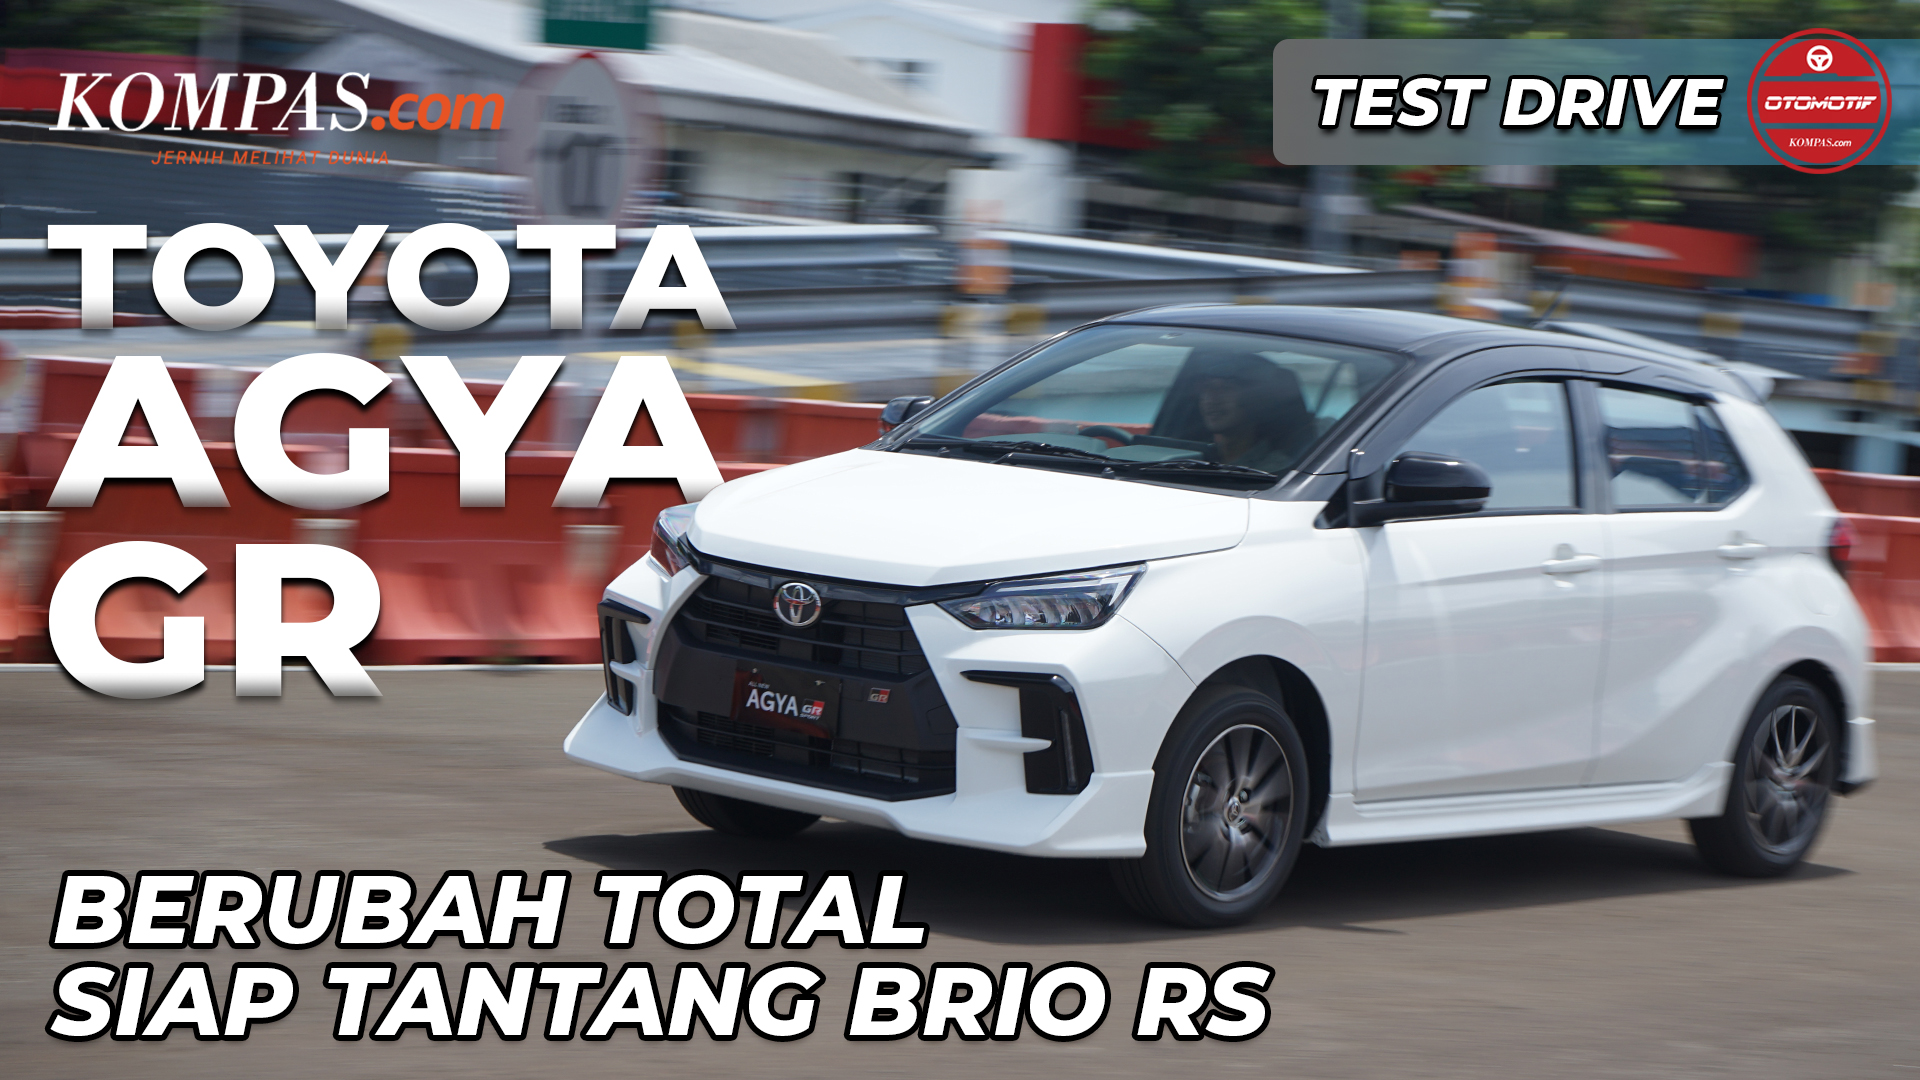 TEST DRIVE | Toyota Agya GR | Berubah Total Siap Tantang Brio RS